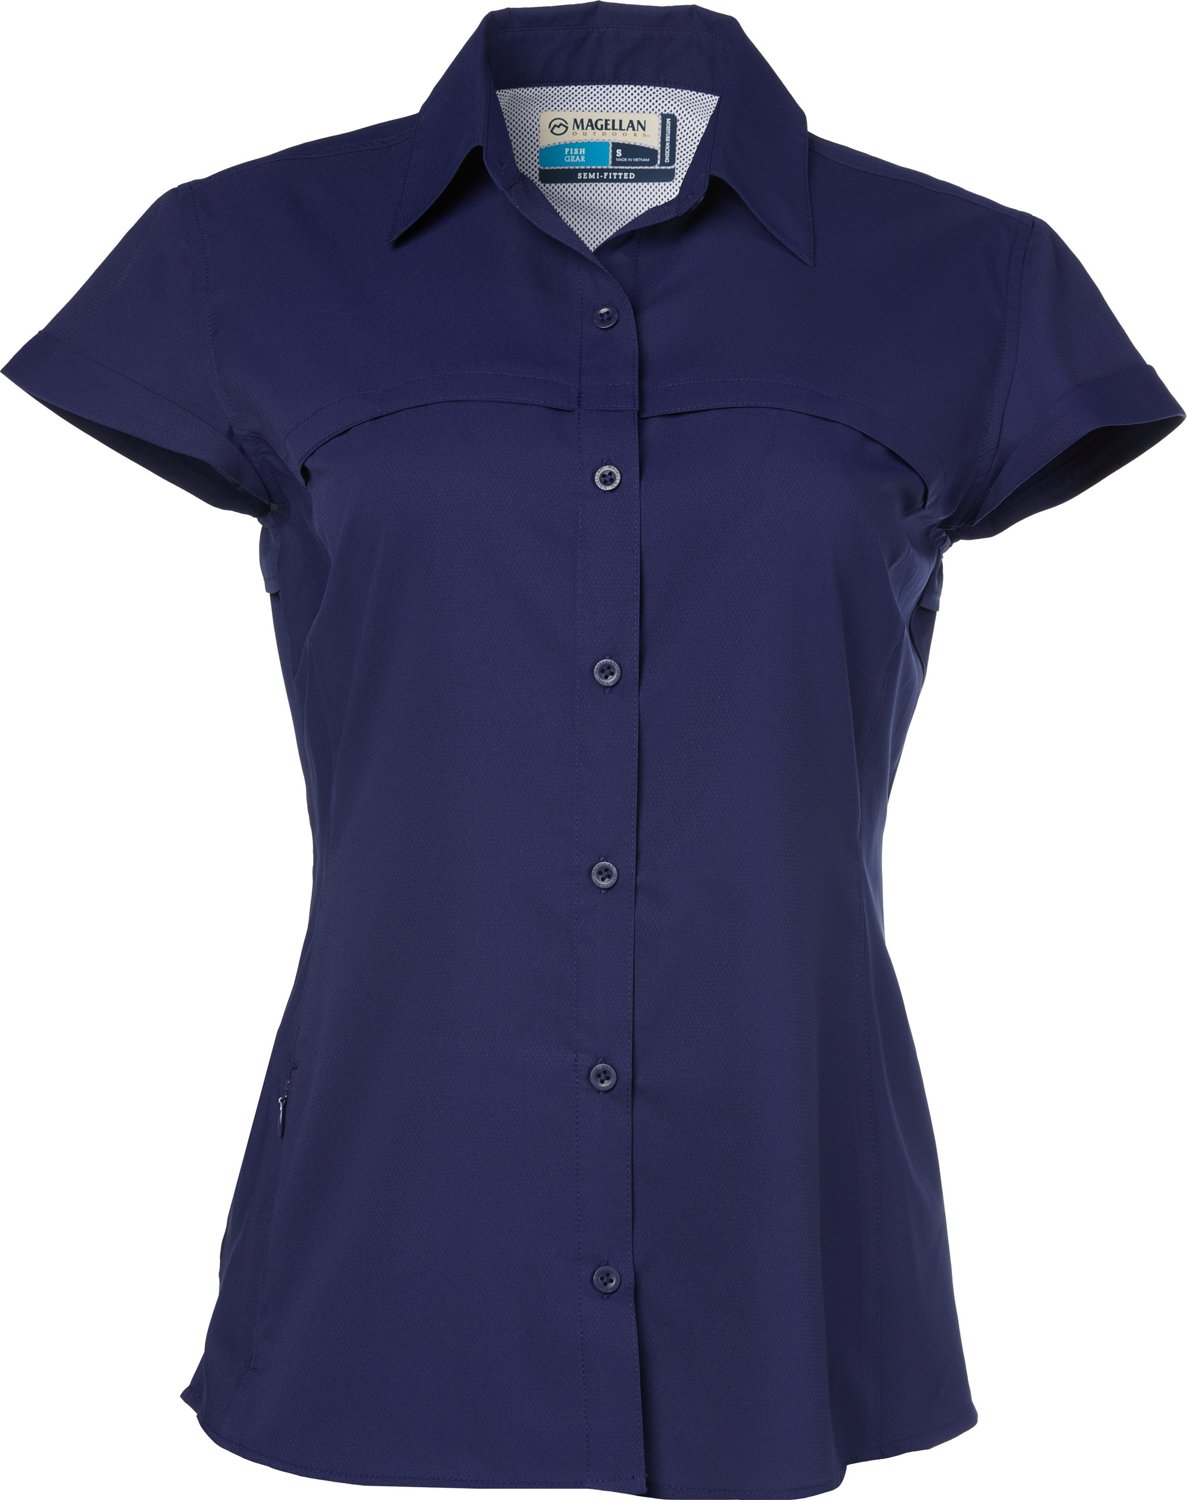 Magellan Outdoors Women's Overcast Fishing Button-Down Shirt | Academy